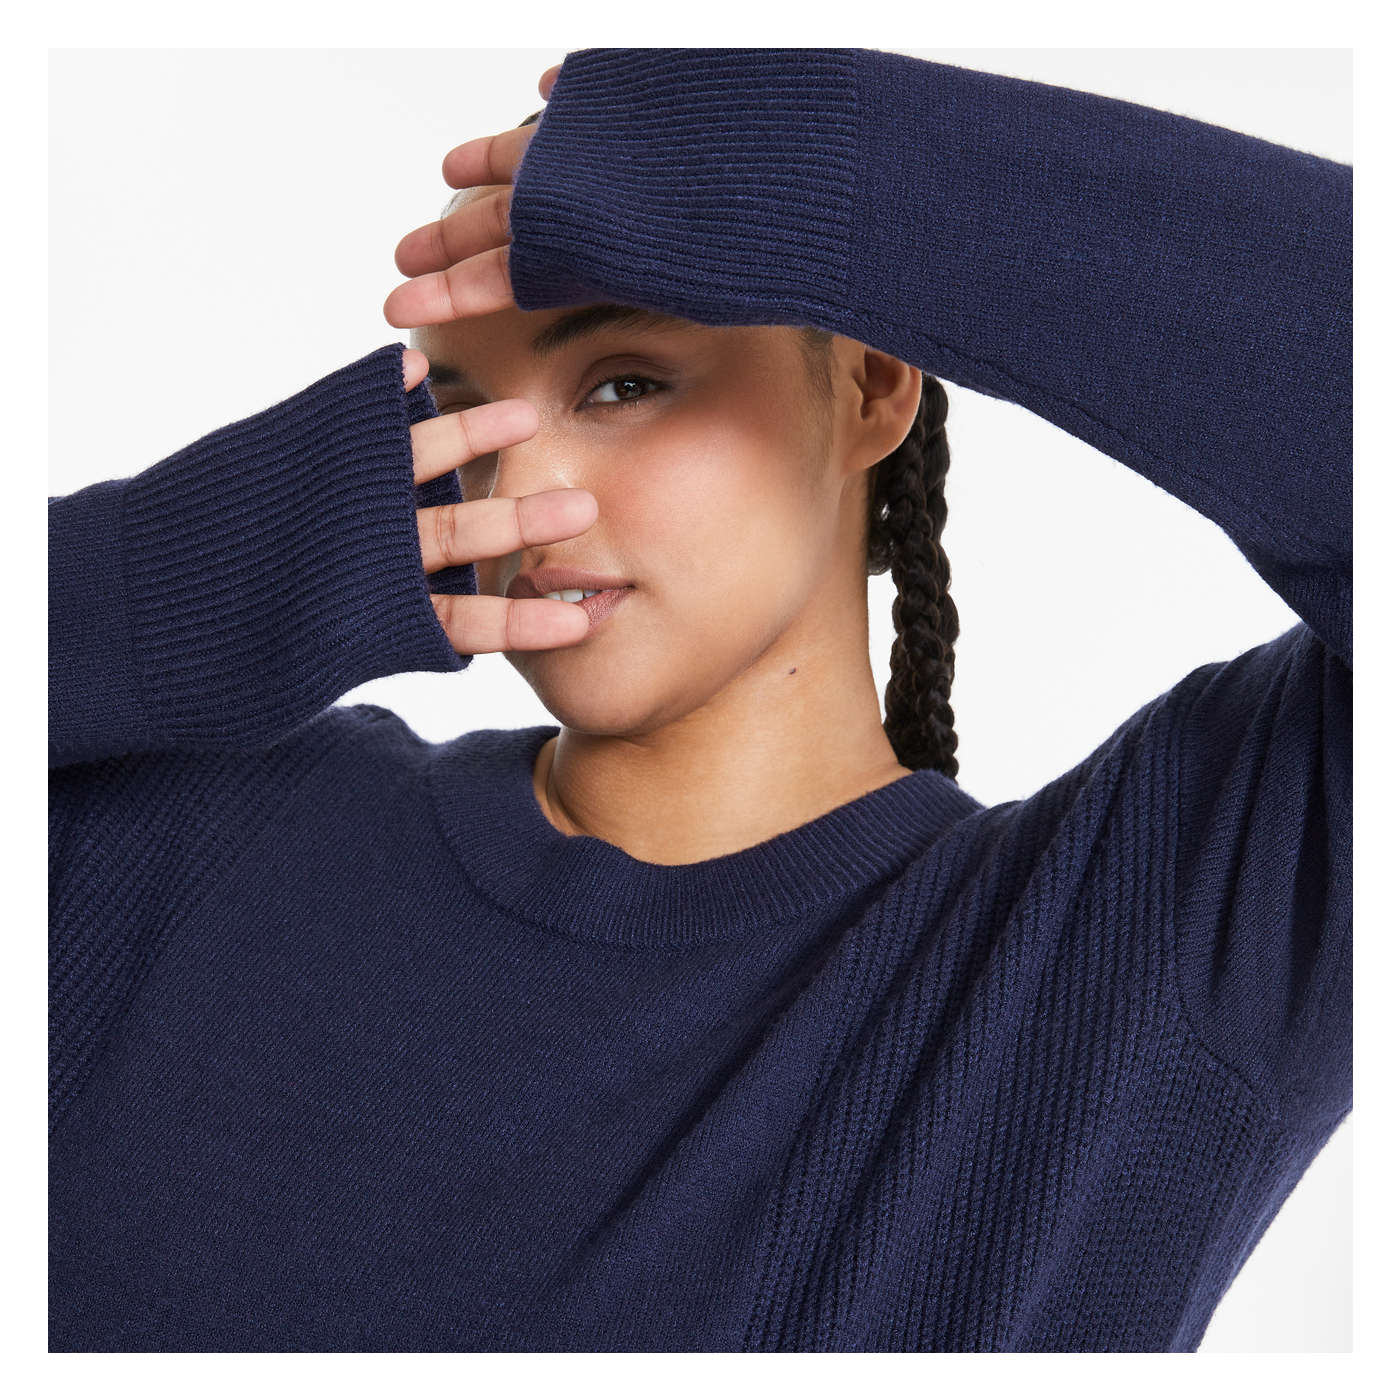 Women+ Crew Neck Sweater in Dark Blue from Joe Fresh